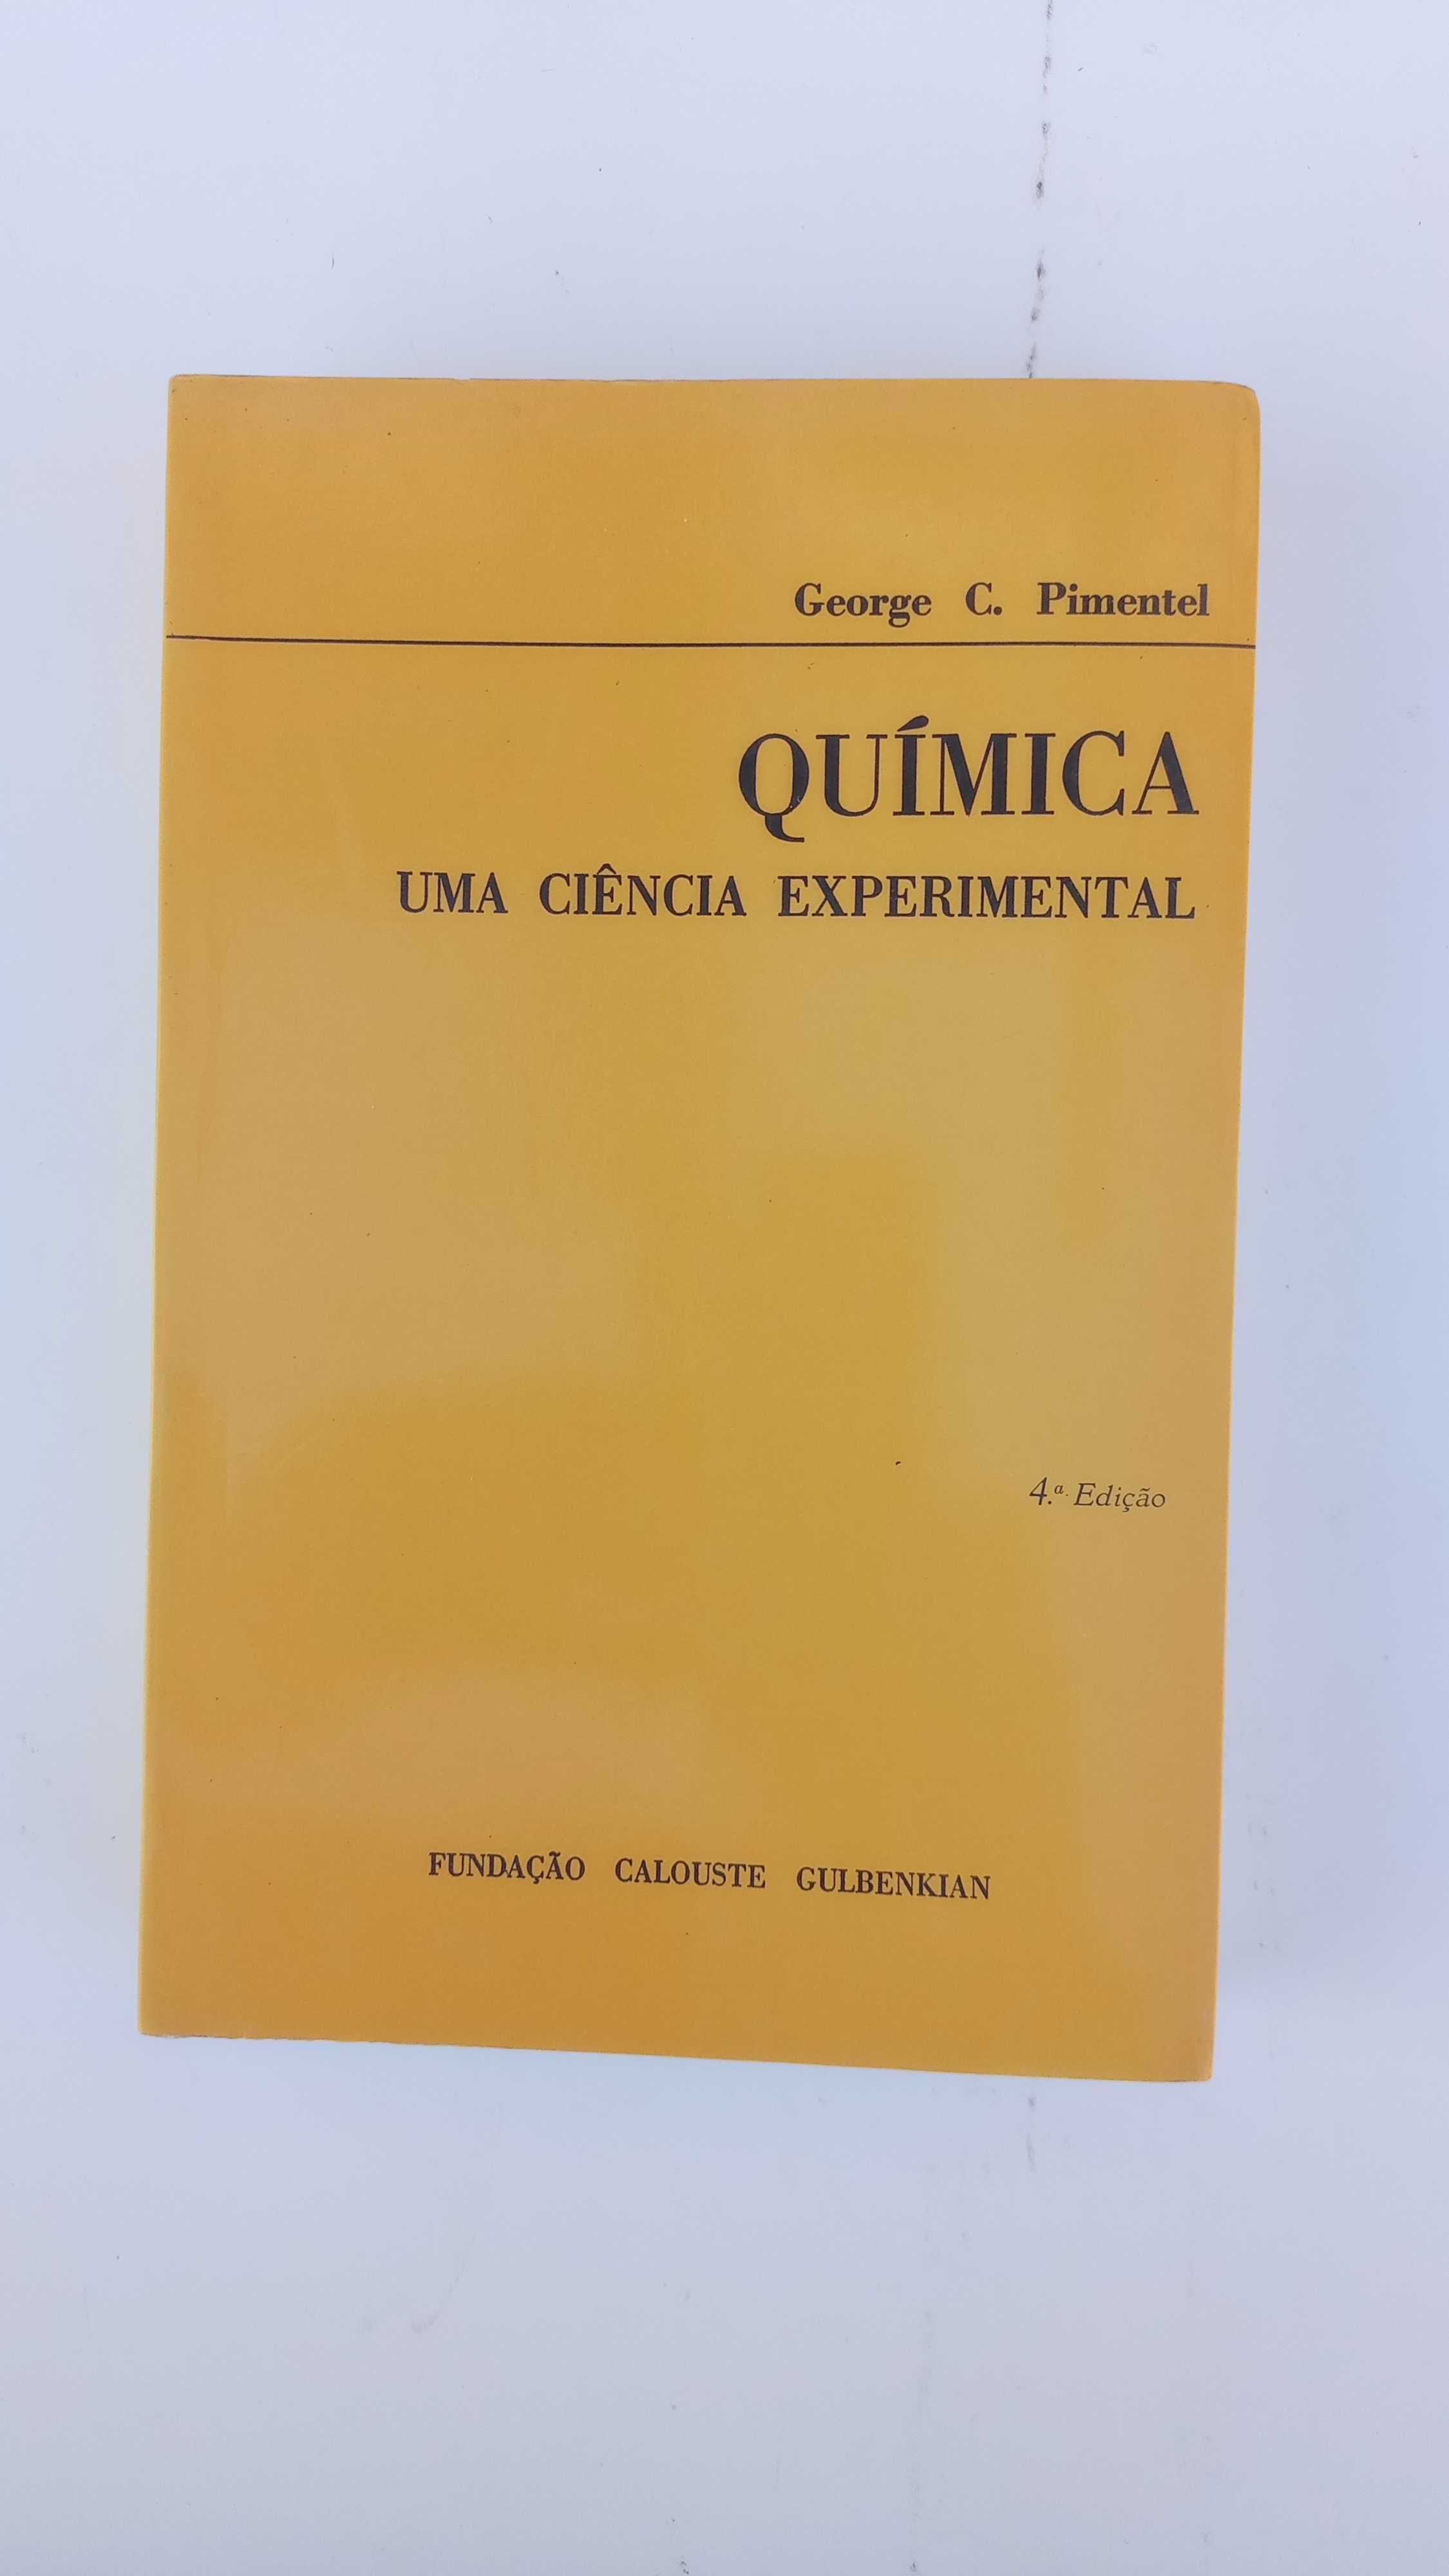 Quimica - Uma Ciência Experimental